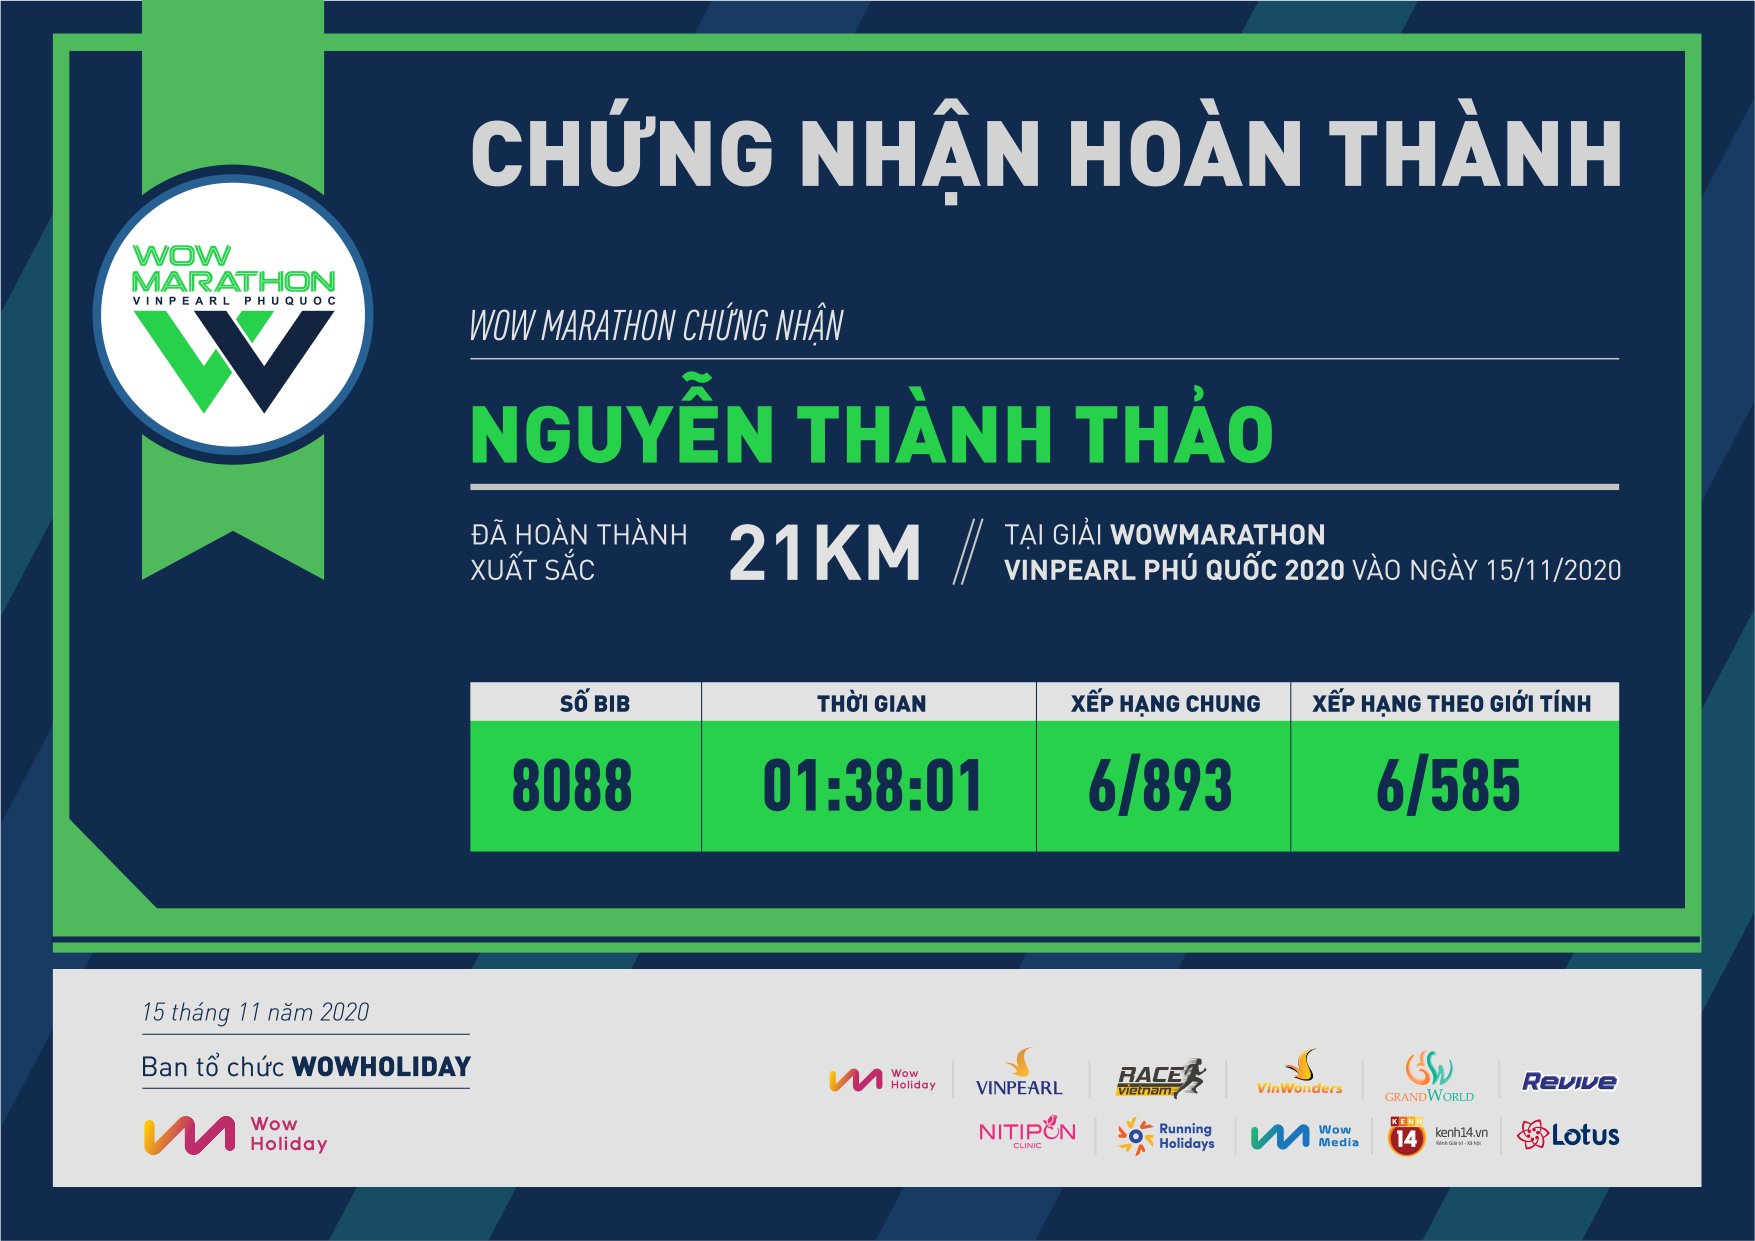 8088 - Nguyễn Thành Thảo